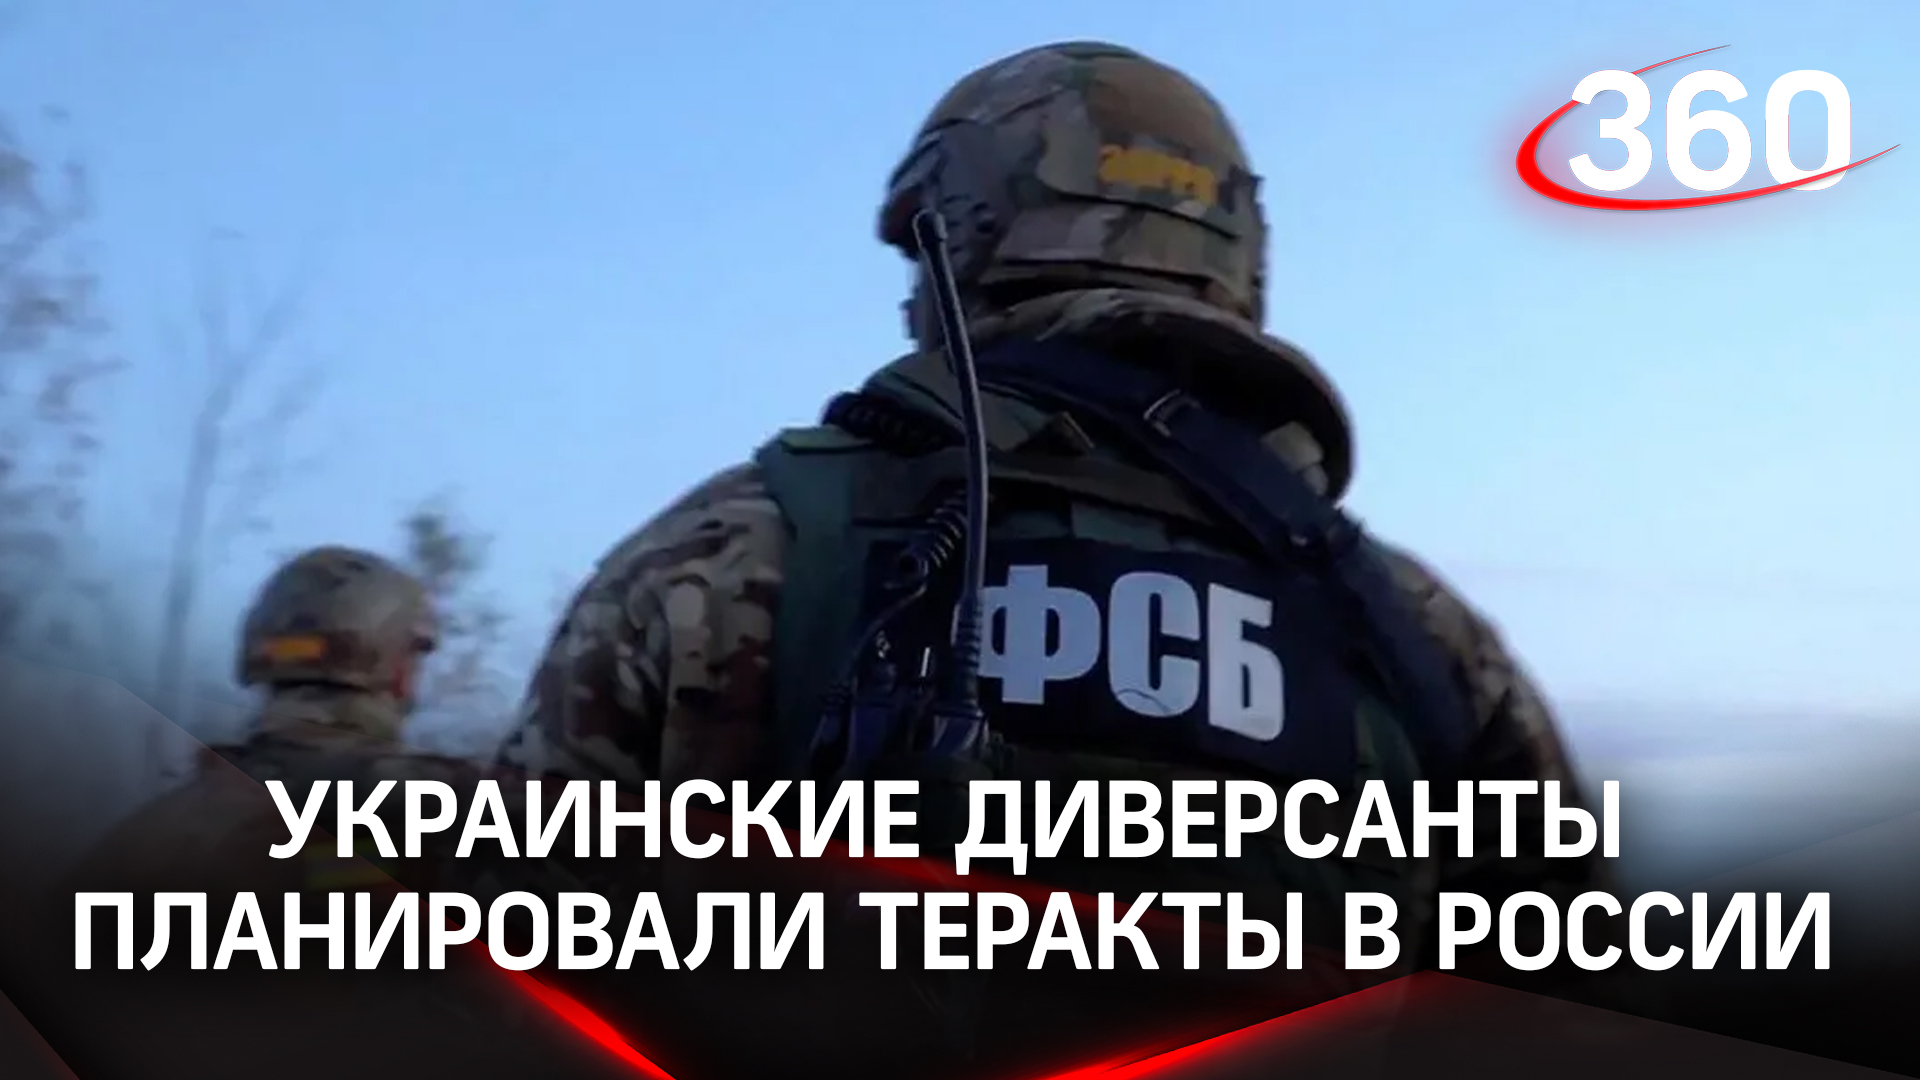 Ракеты и тротил: украинские диверсанты планировали теракты в России